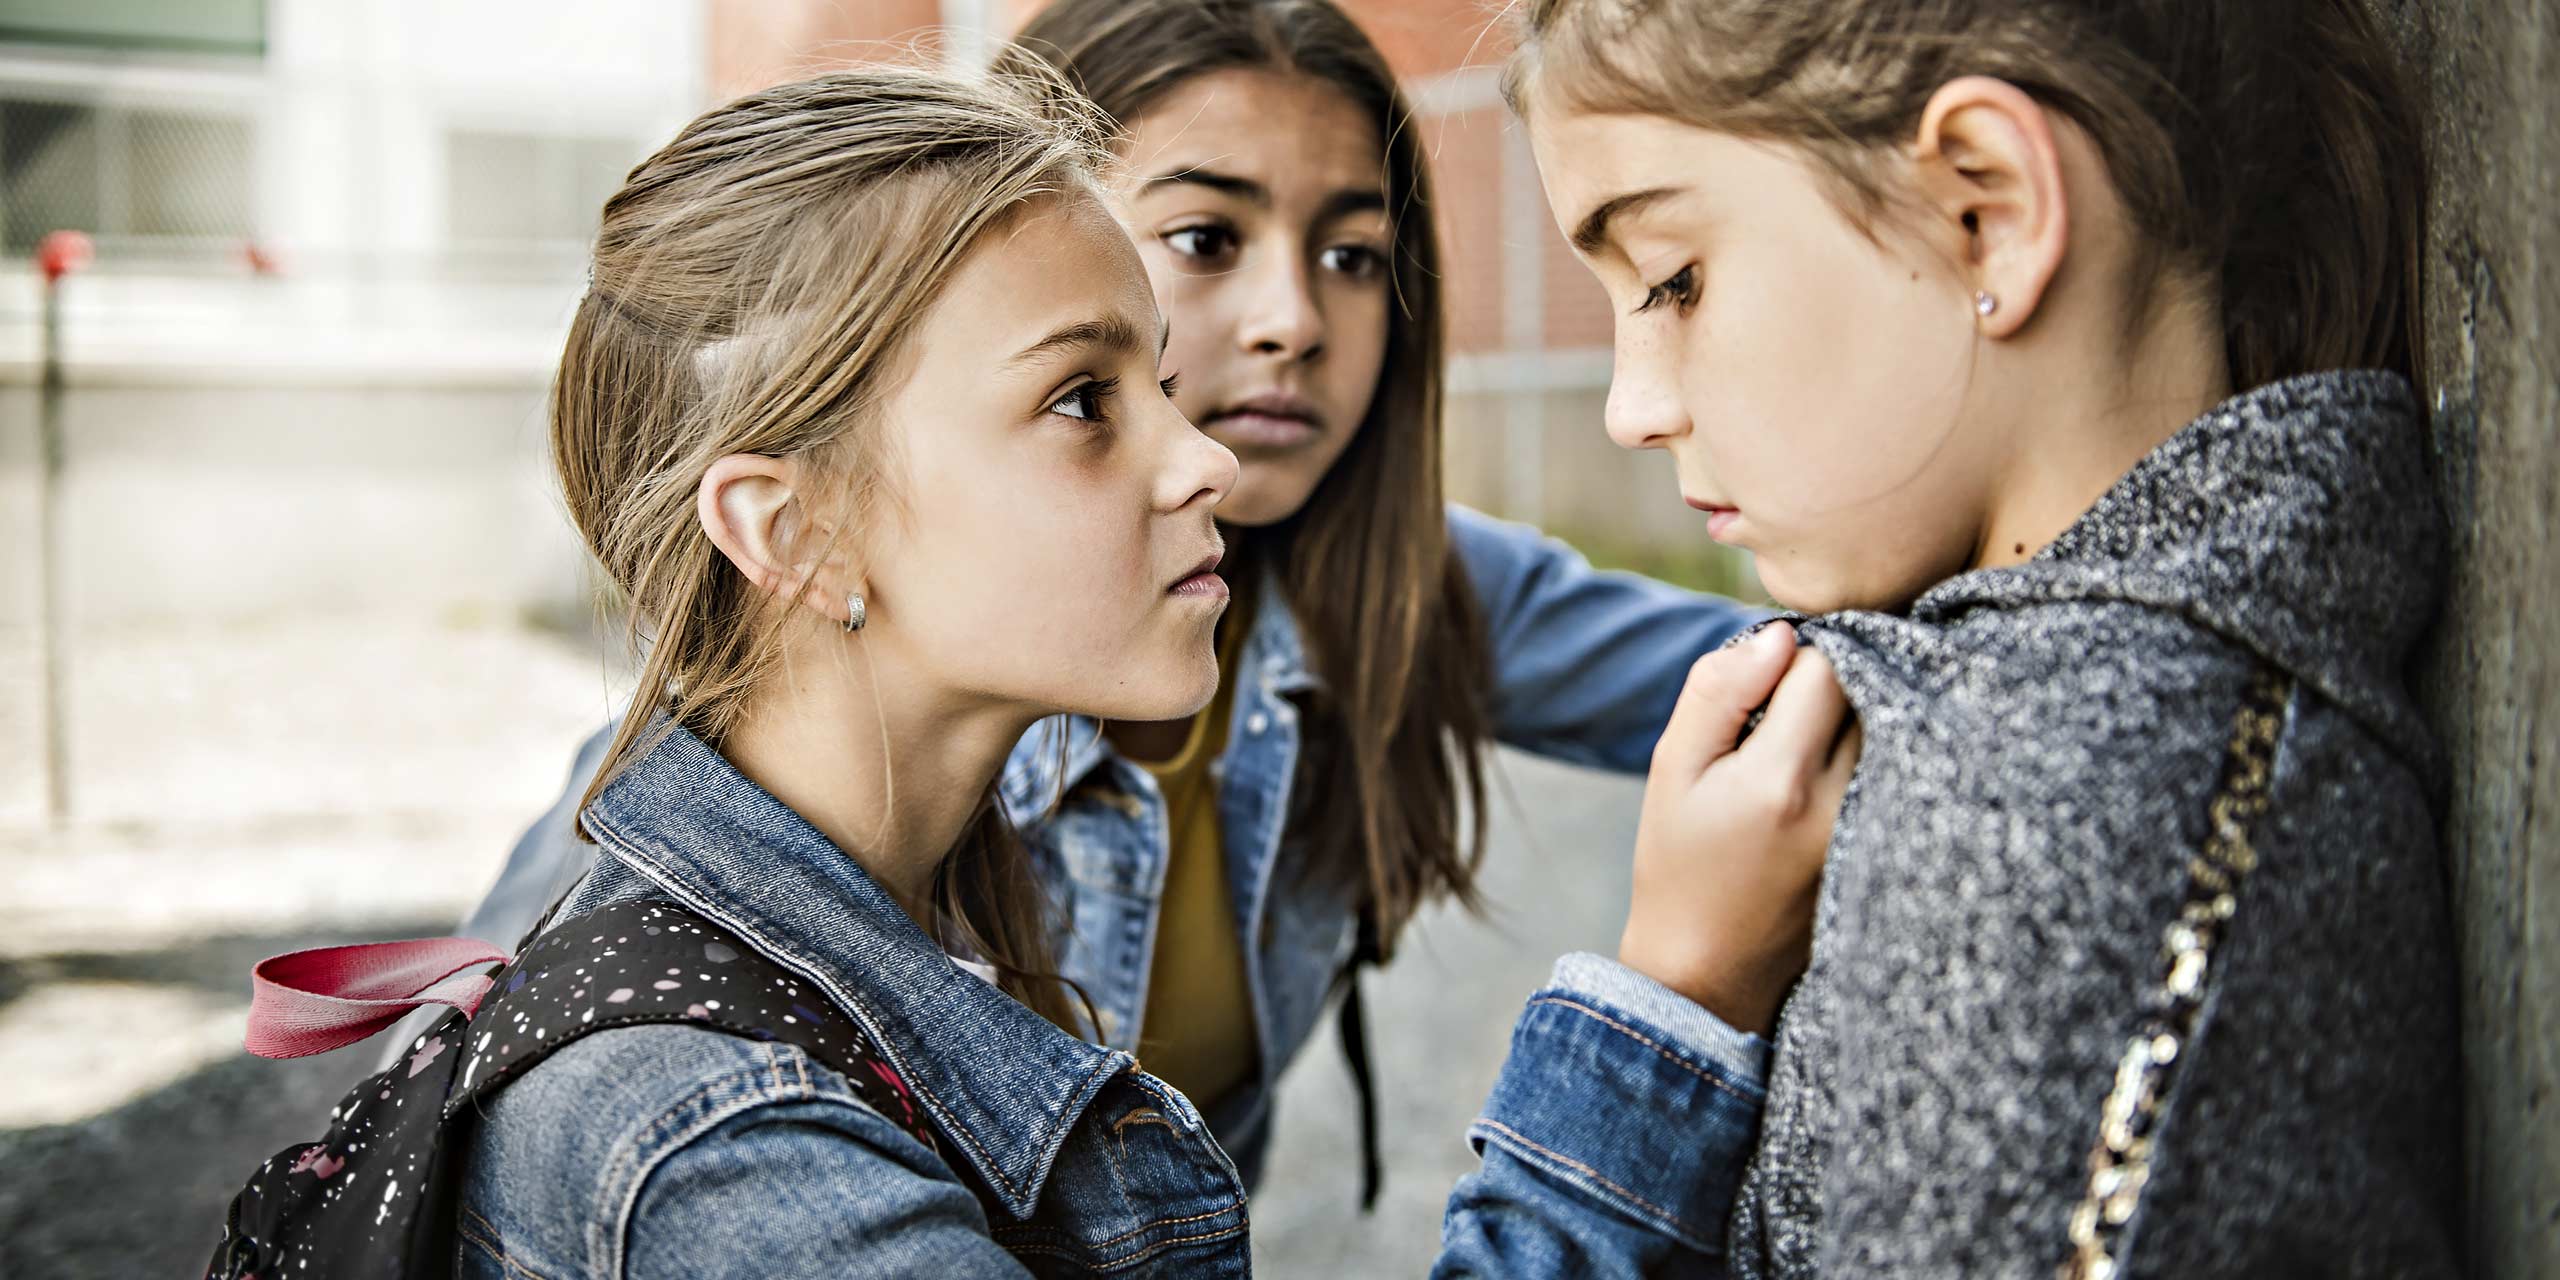 Zwei junge Mädchen drangsalieren ein drittes Mädchen, welches am Kragen festgehalten wird.